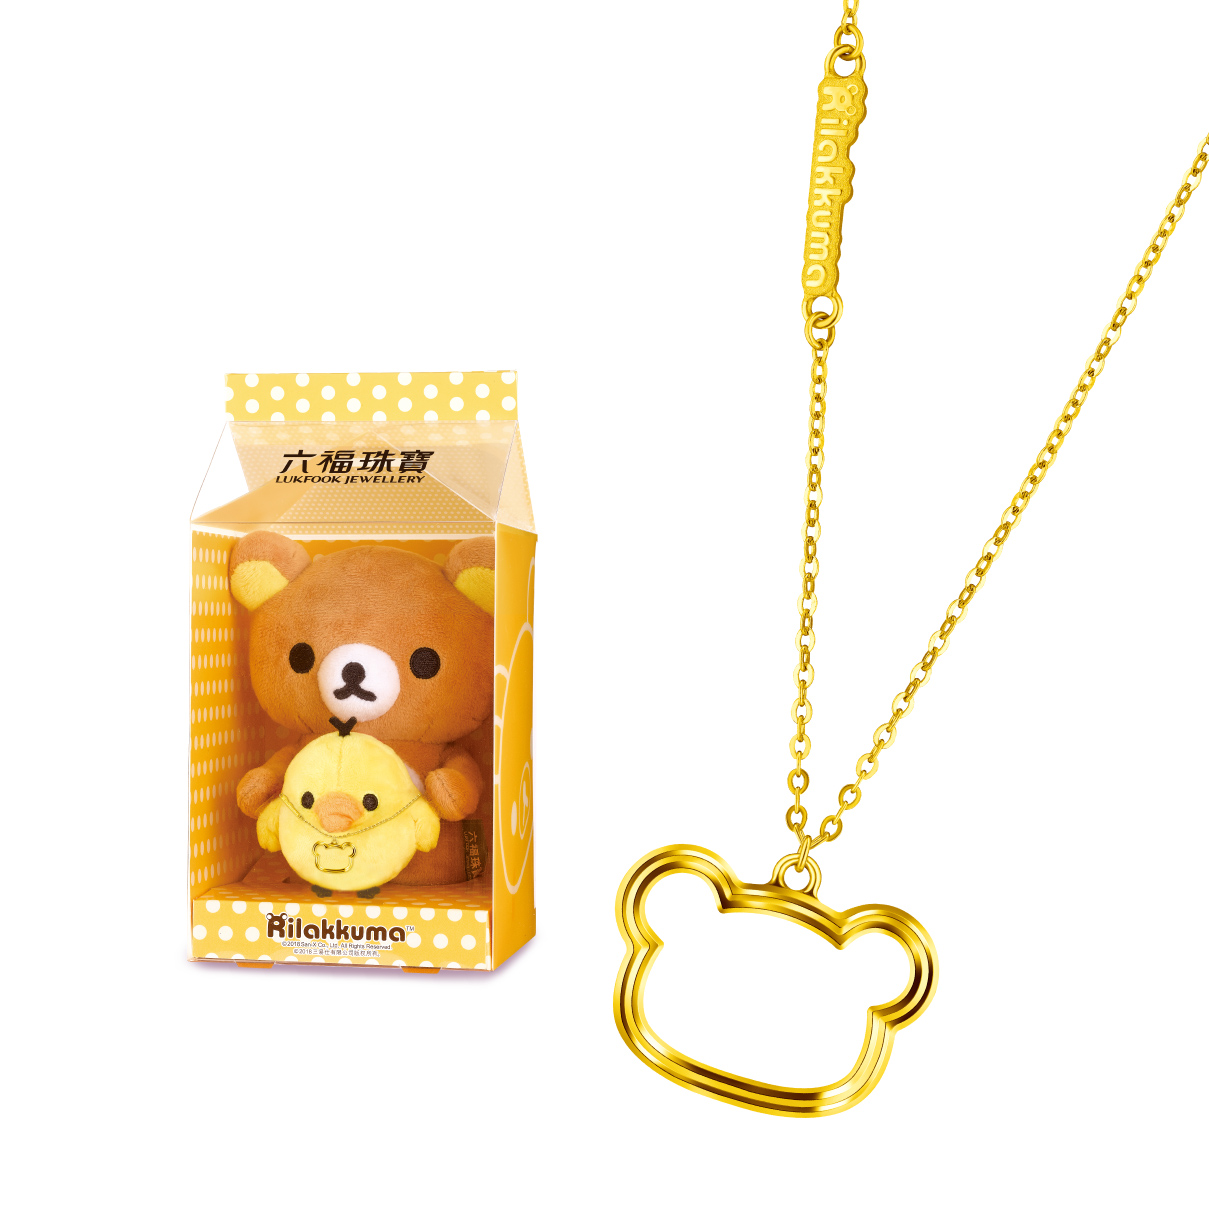 輕鬆小熊™系列光影金黃金項鏈及錢箱禮盒